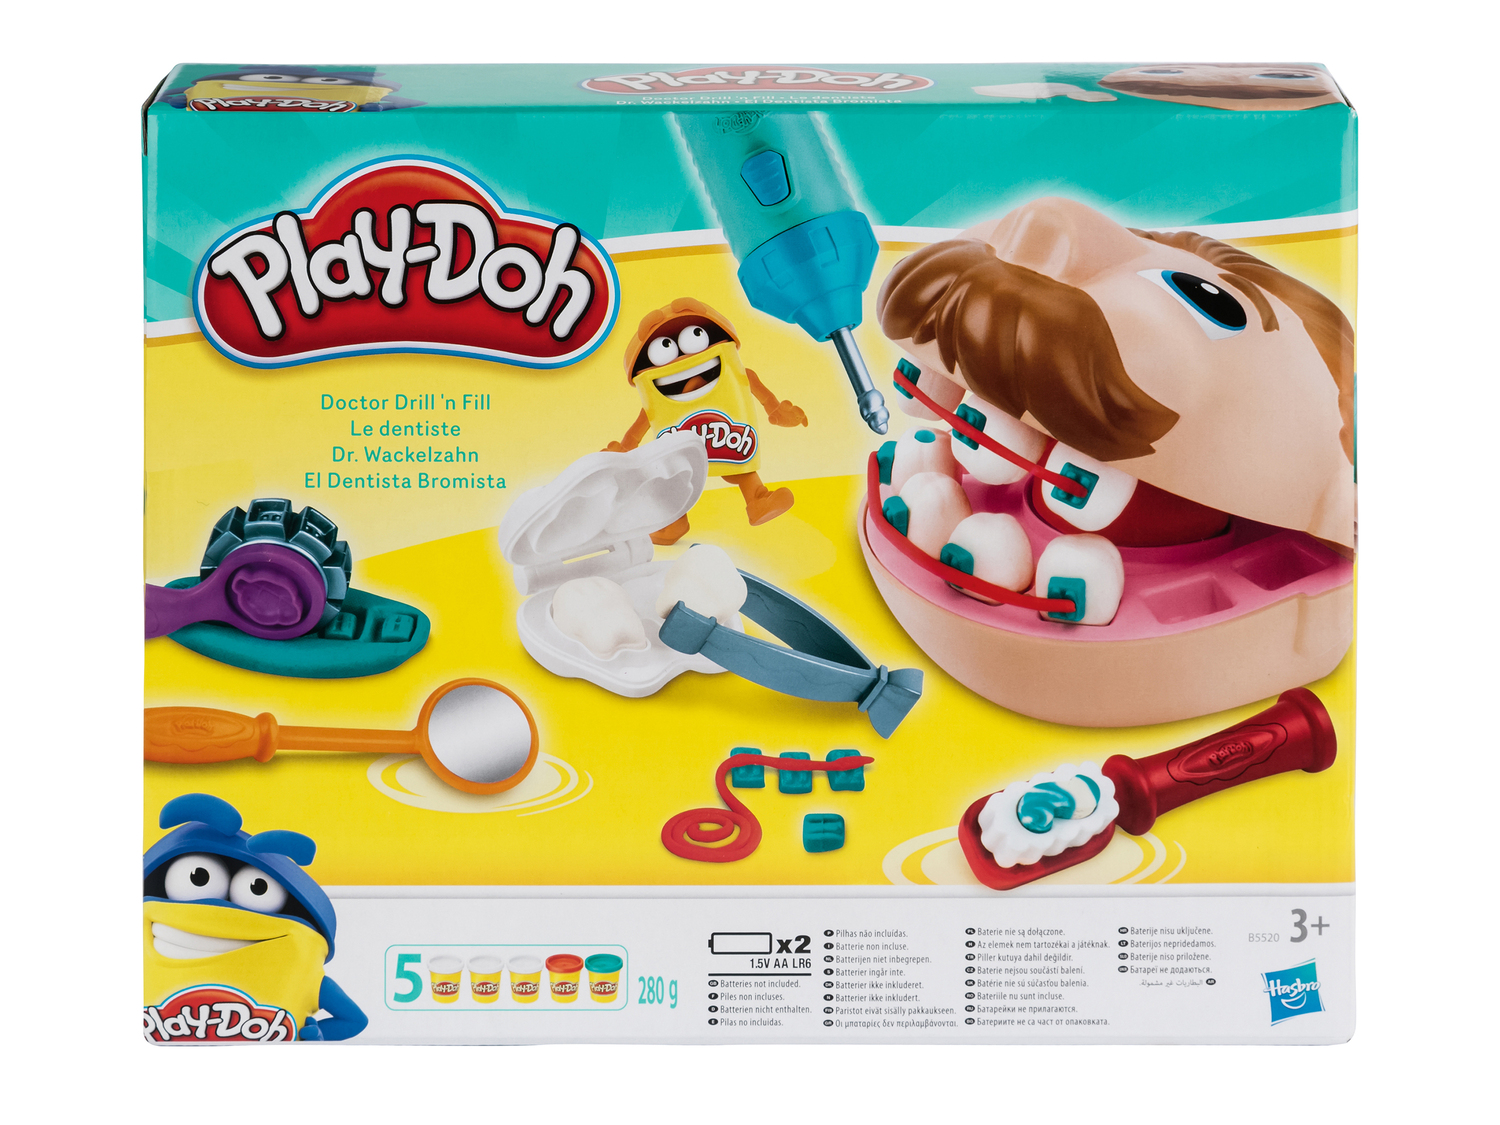 Pasta da modellare Play-Doh, le prix 14.99 &#8364;  
-  5 vasetti
Caratteristiche